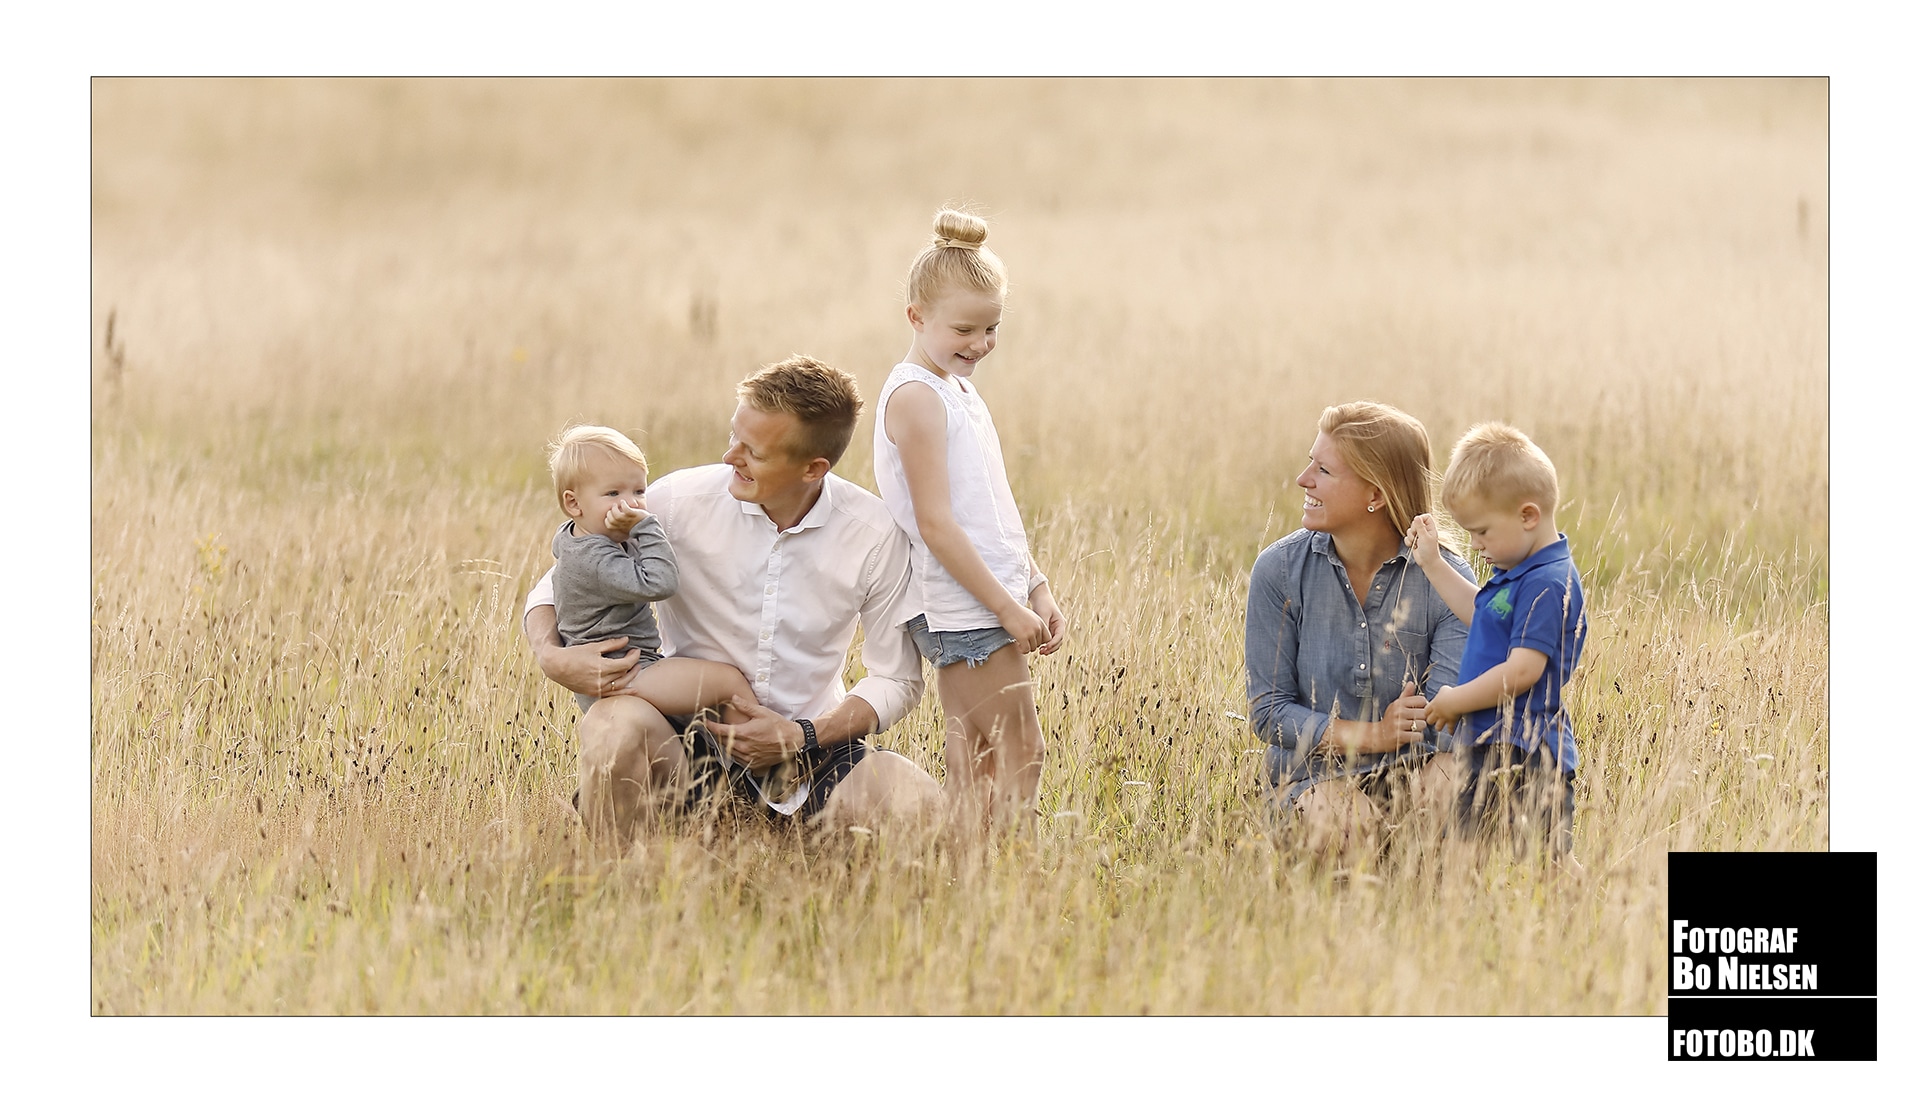 Familie fotografering on location i mark, fotograferet af Fotograf Bo Nielsen